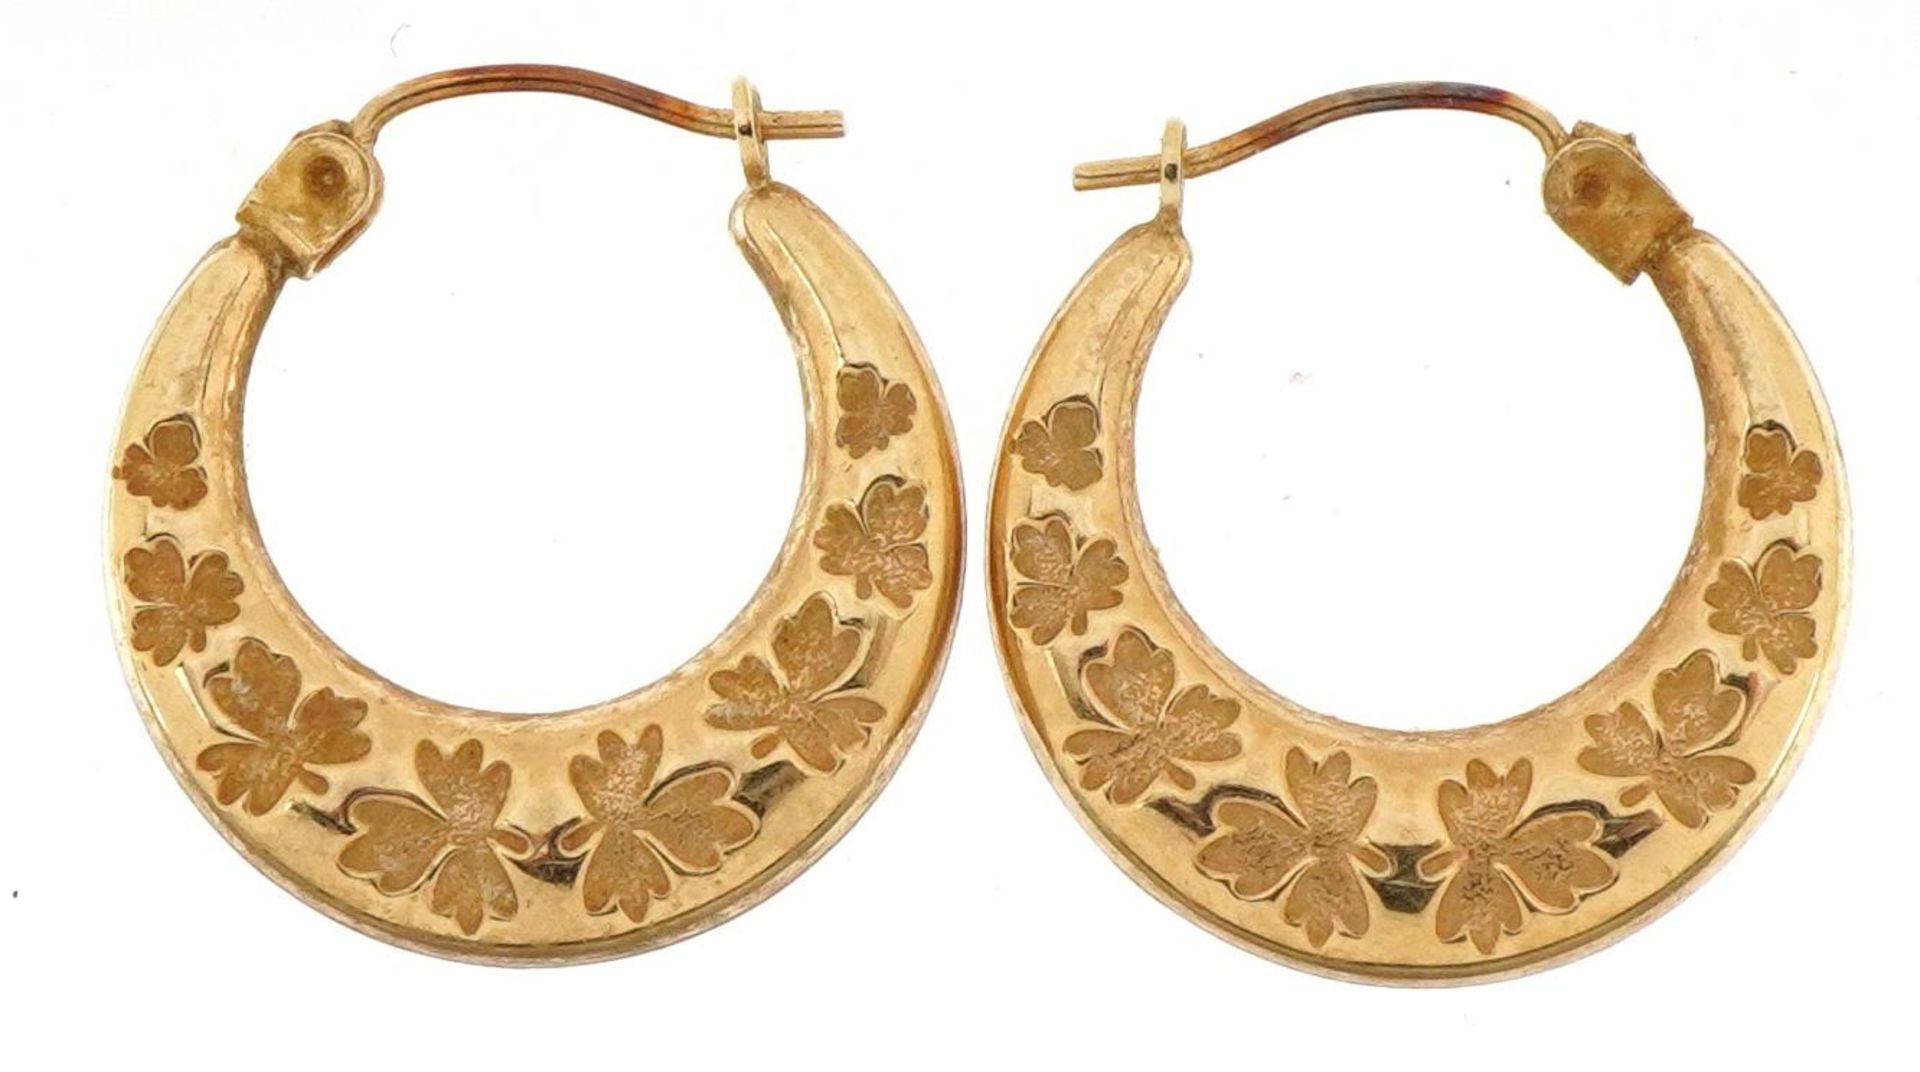 Pair of unmarked 9ct gold hoop earrings engraved with leaves, 1.8cm in diameter, 1.0g